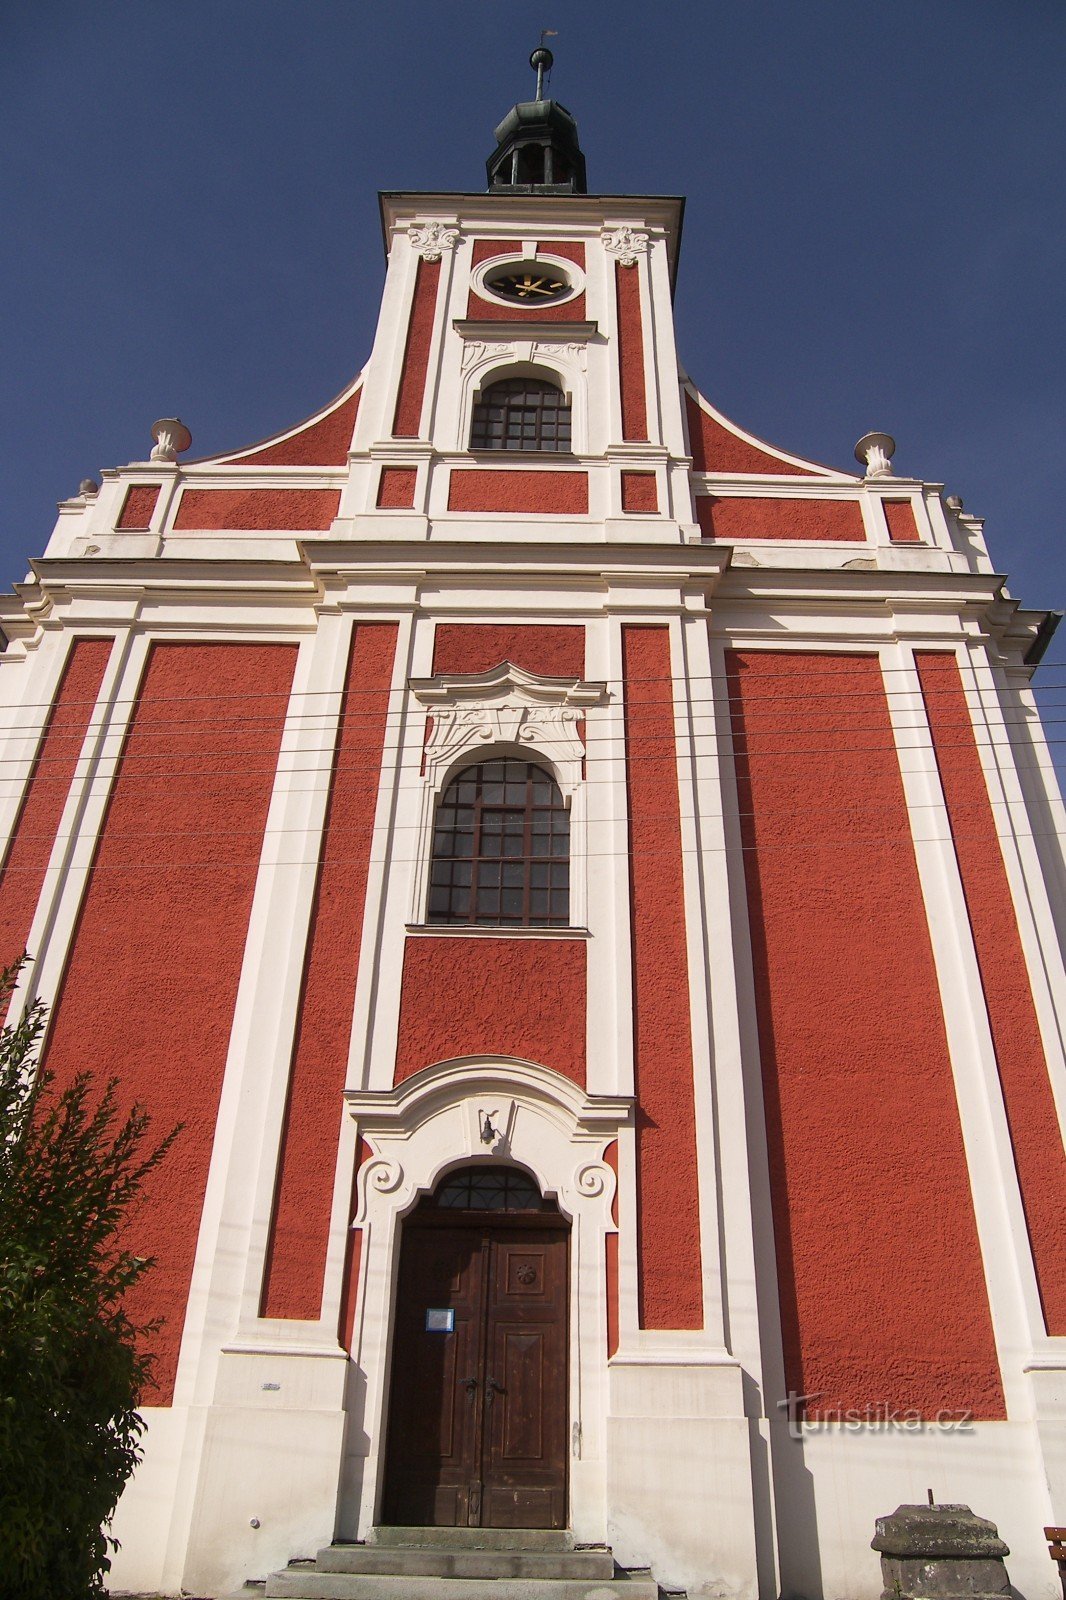 LICHNOV-ST. SAINT NICOLAS